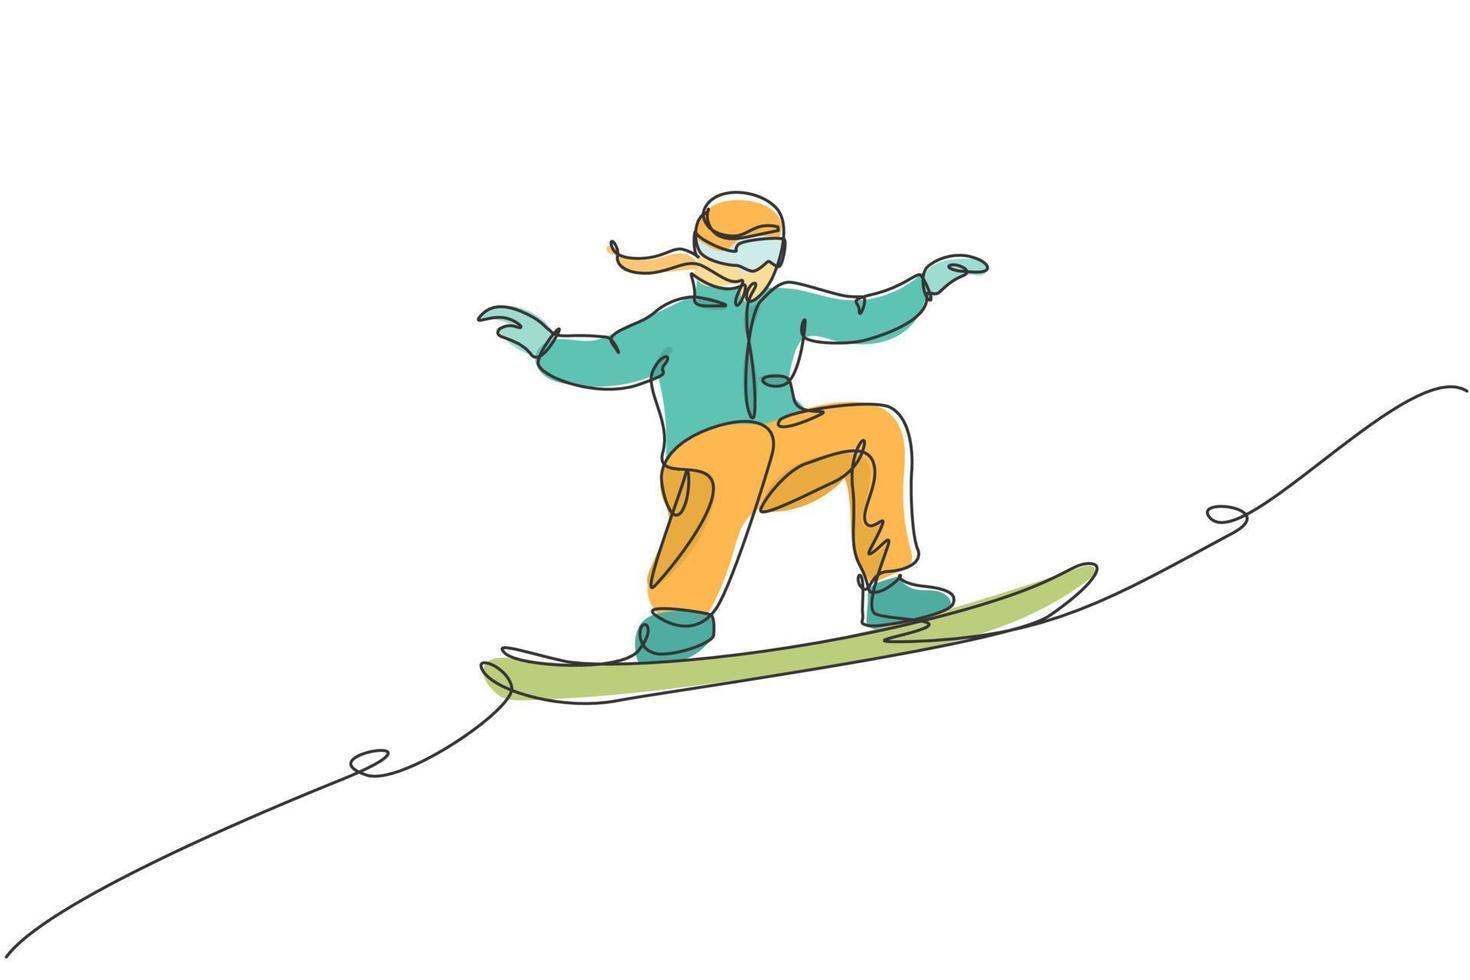 Eine einzige Strichzeichnung einer jungen, energiegeladenen Snowboarderin, die schnelles Snowboard auf der schneebedeckten Bergvektorillustration fährt. touristisches Urlaubs-Lifestyle-Sport-Konzept. modernes Design mit durchgehender Linienführung vektor